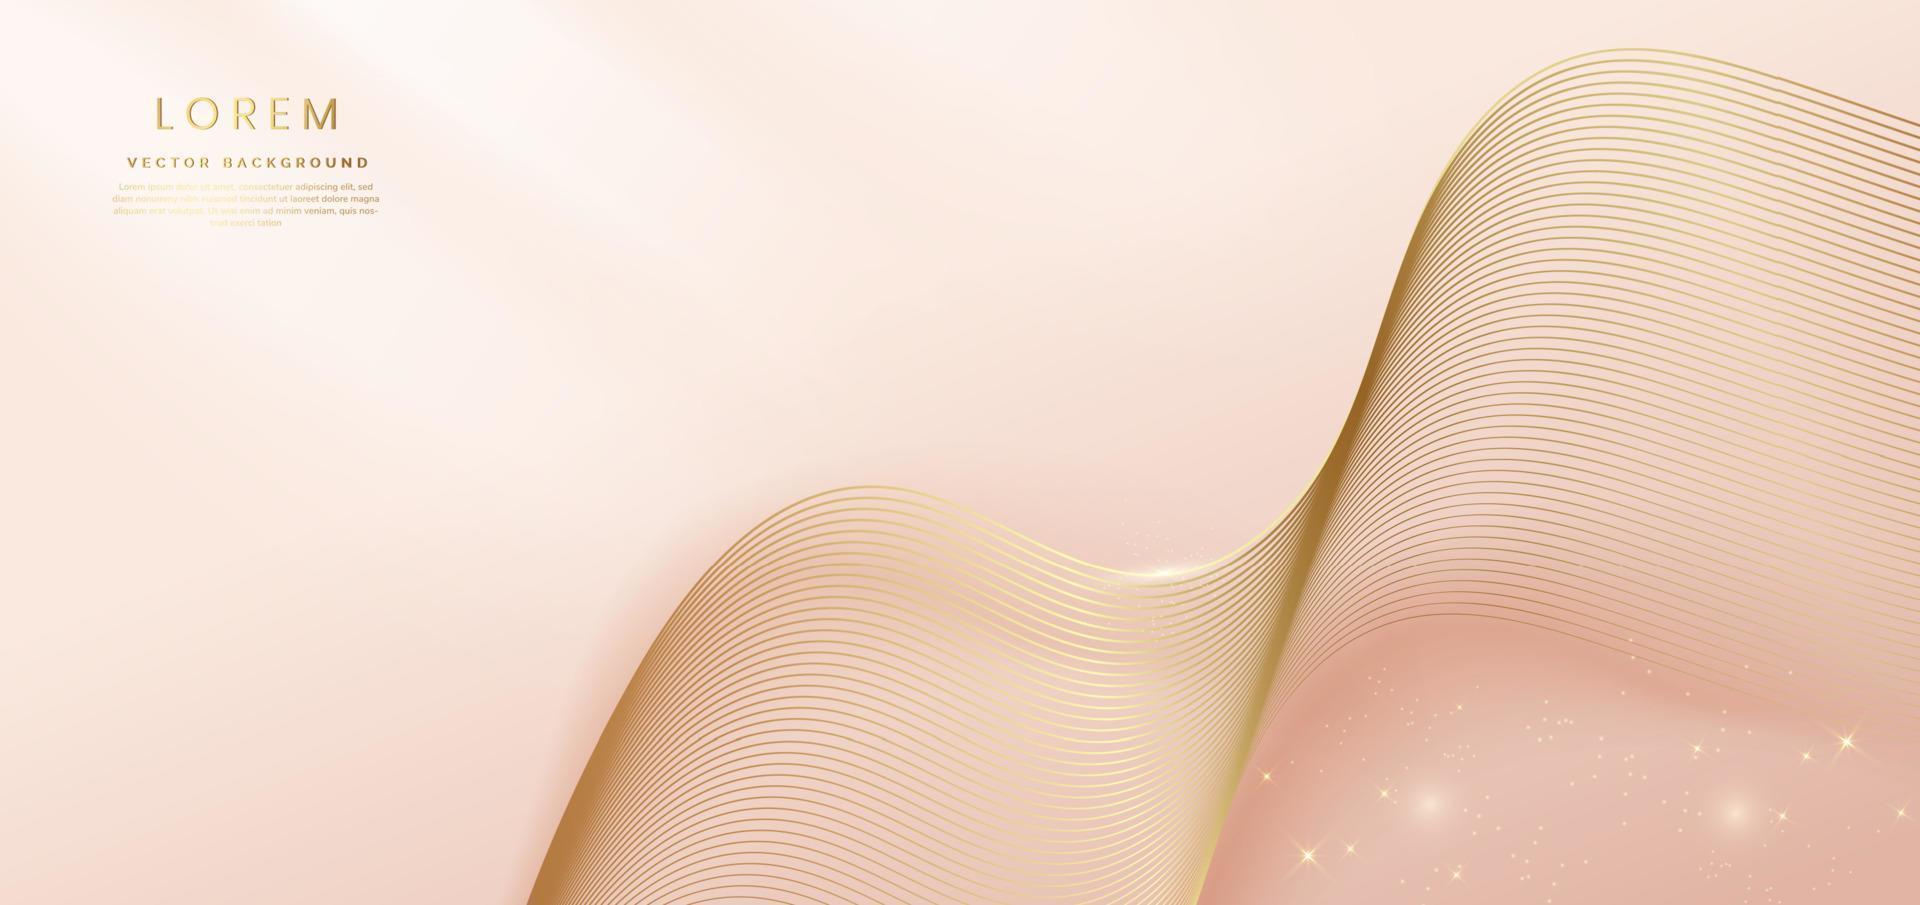 líneas curvas doradas abstractas elegantes sobre fondo rosa pastel suave con espacio de copia para texto. concepto 3d de lujo. vector